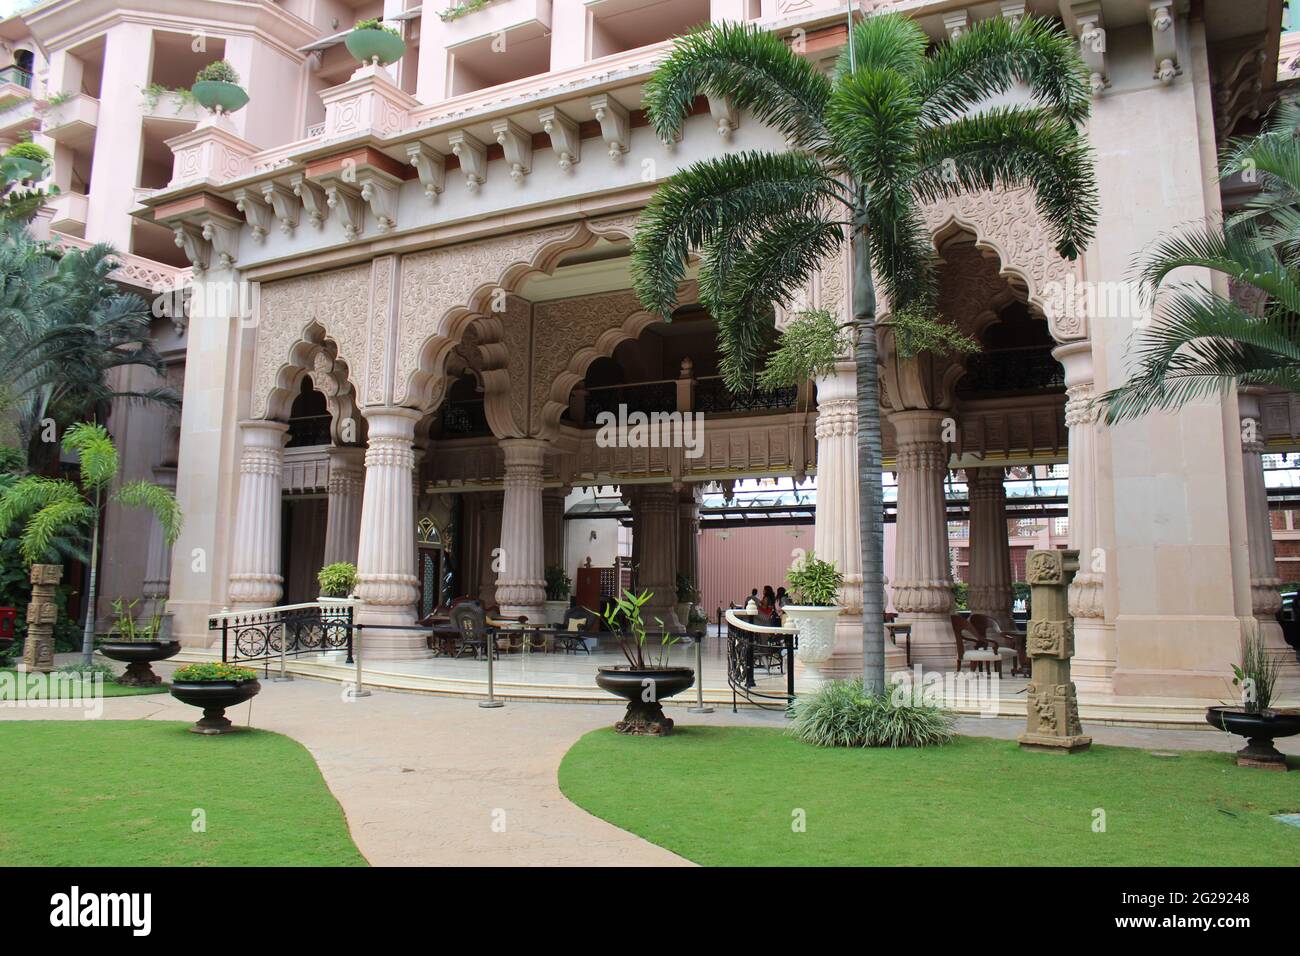 Entrance to The Leela Palace, Bangalore, India Stock Photo